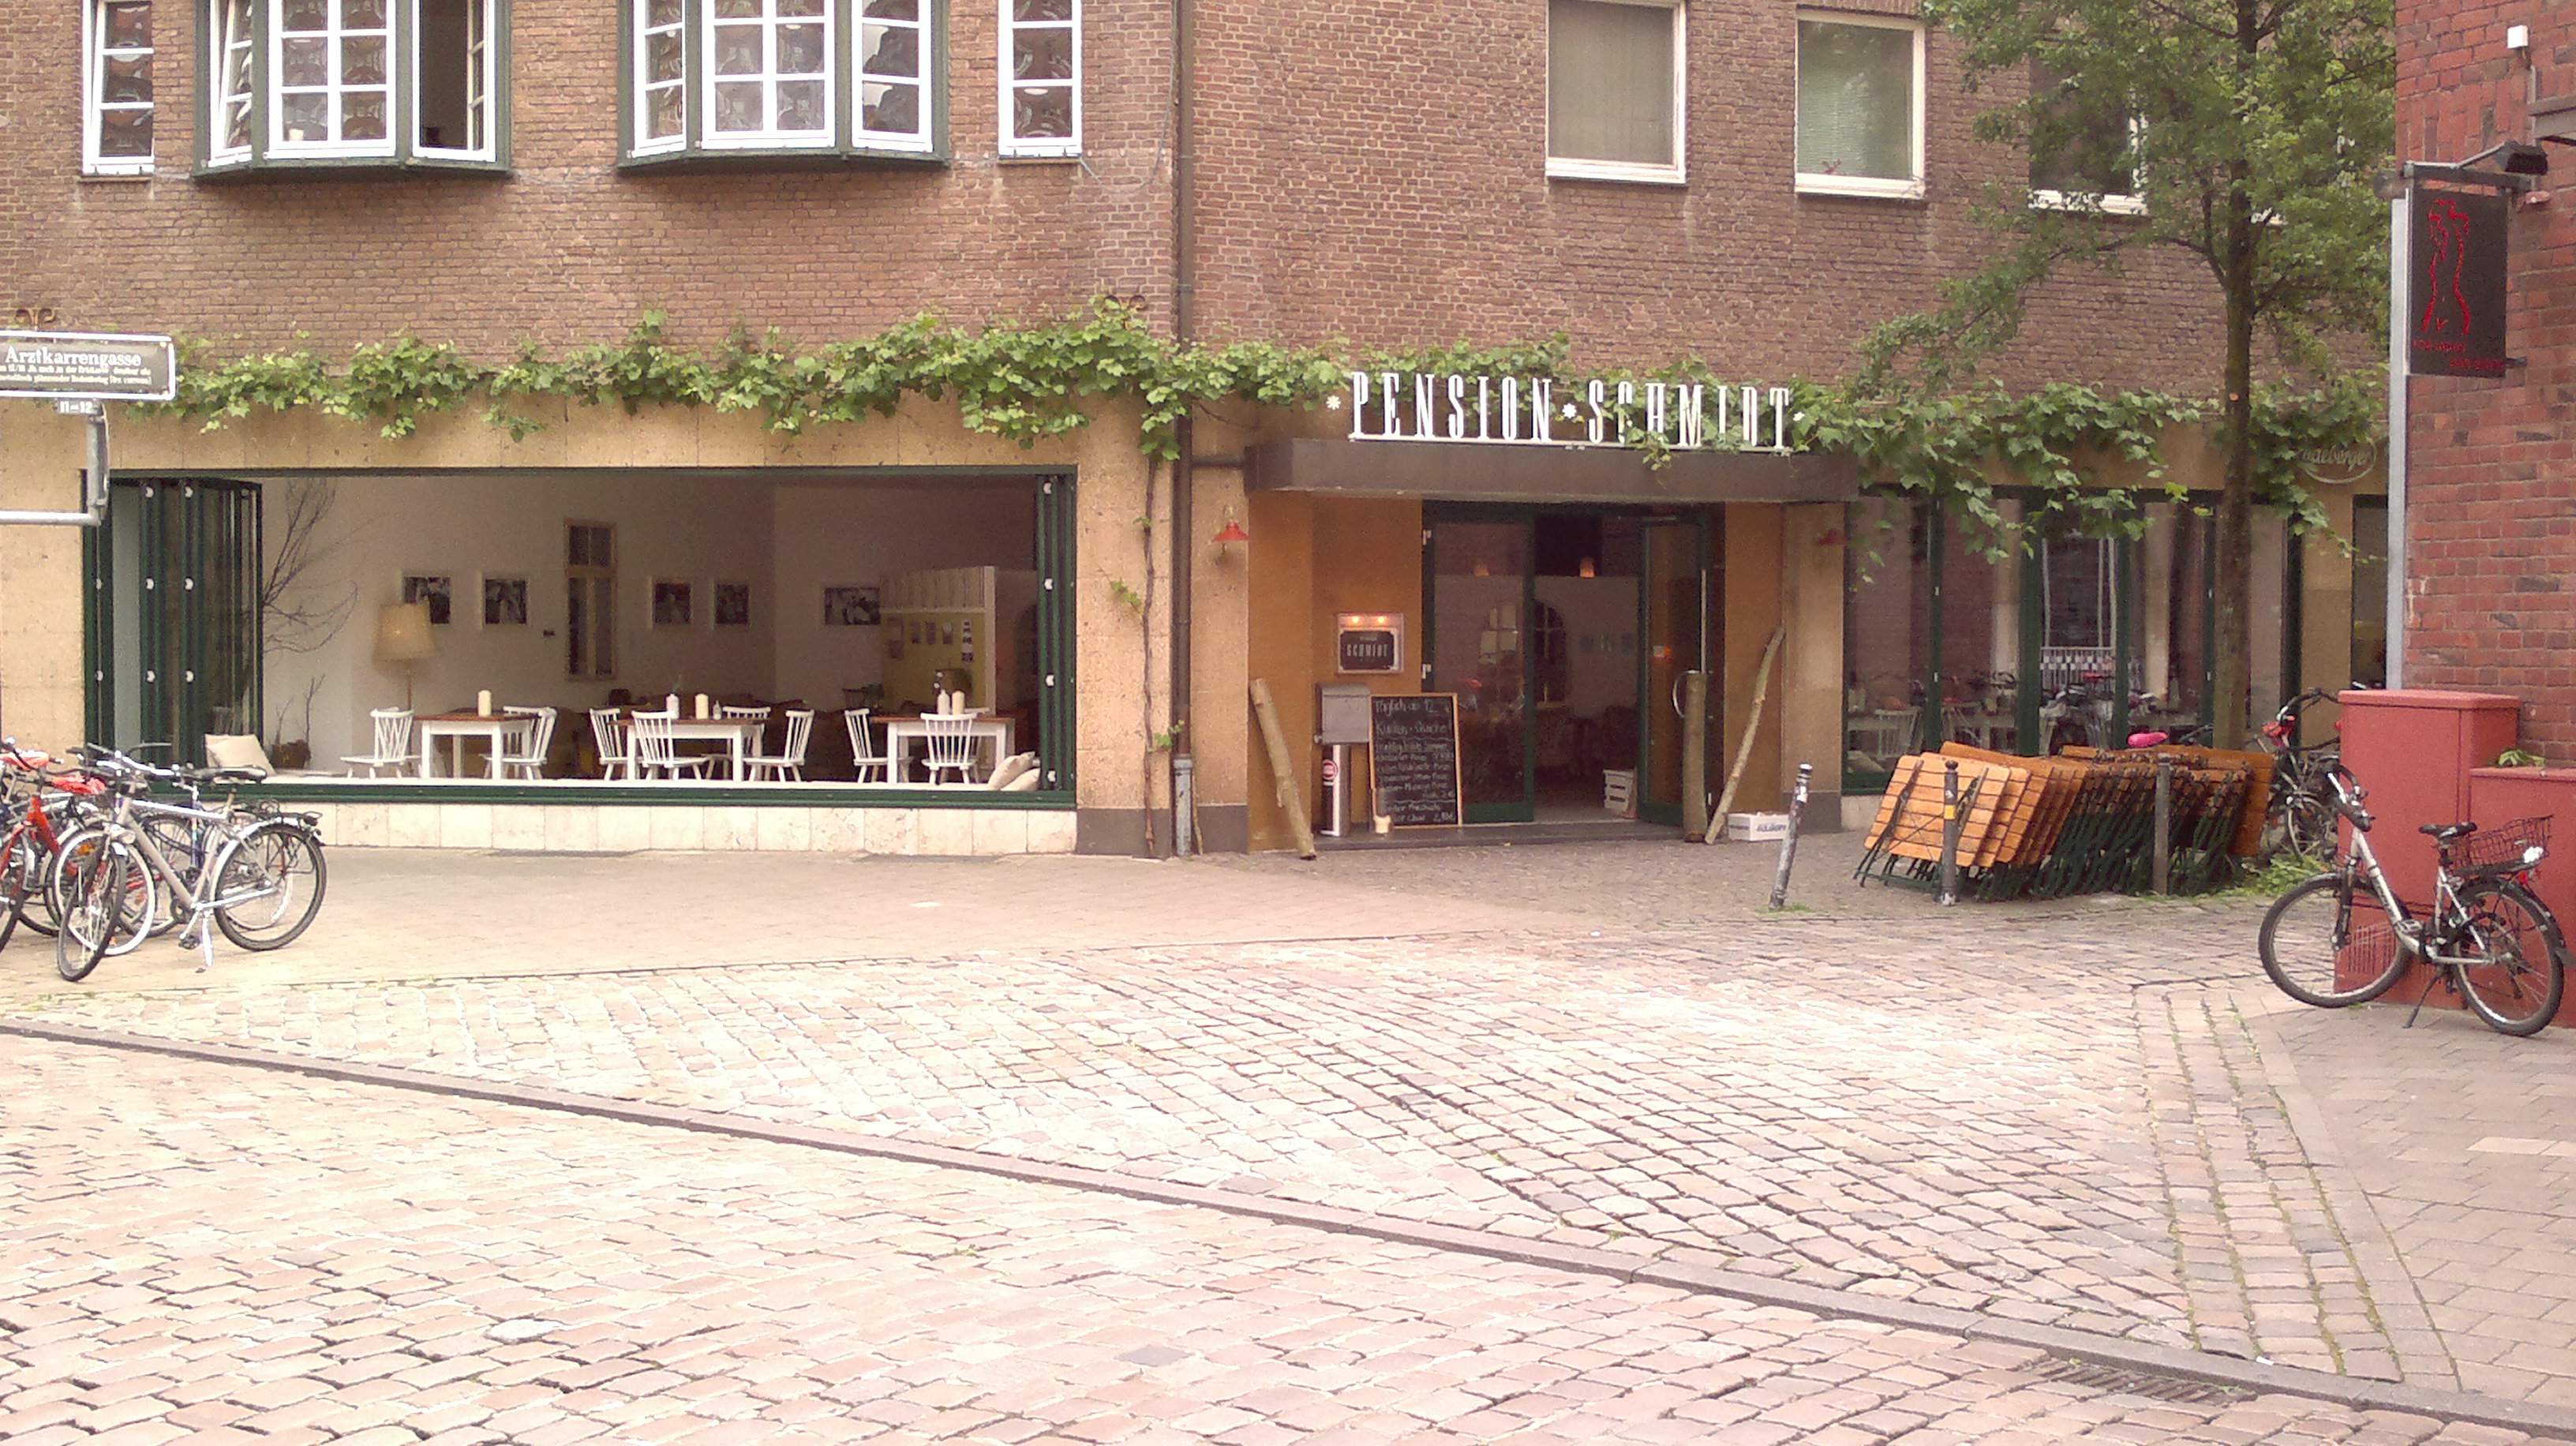 Schaufenster- und Eingangsanlage Cafe 'Pension Schmidt', Münster